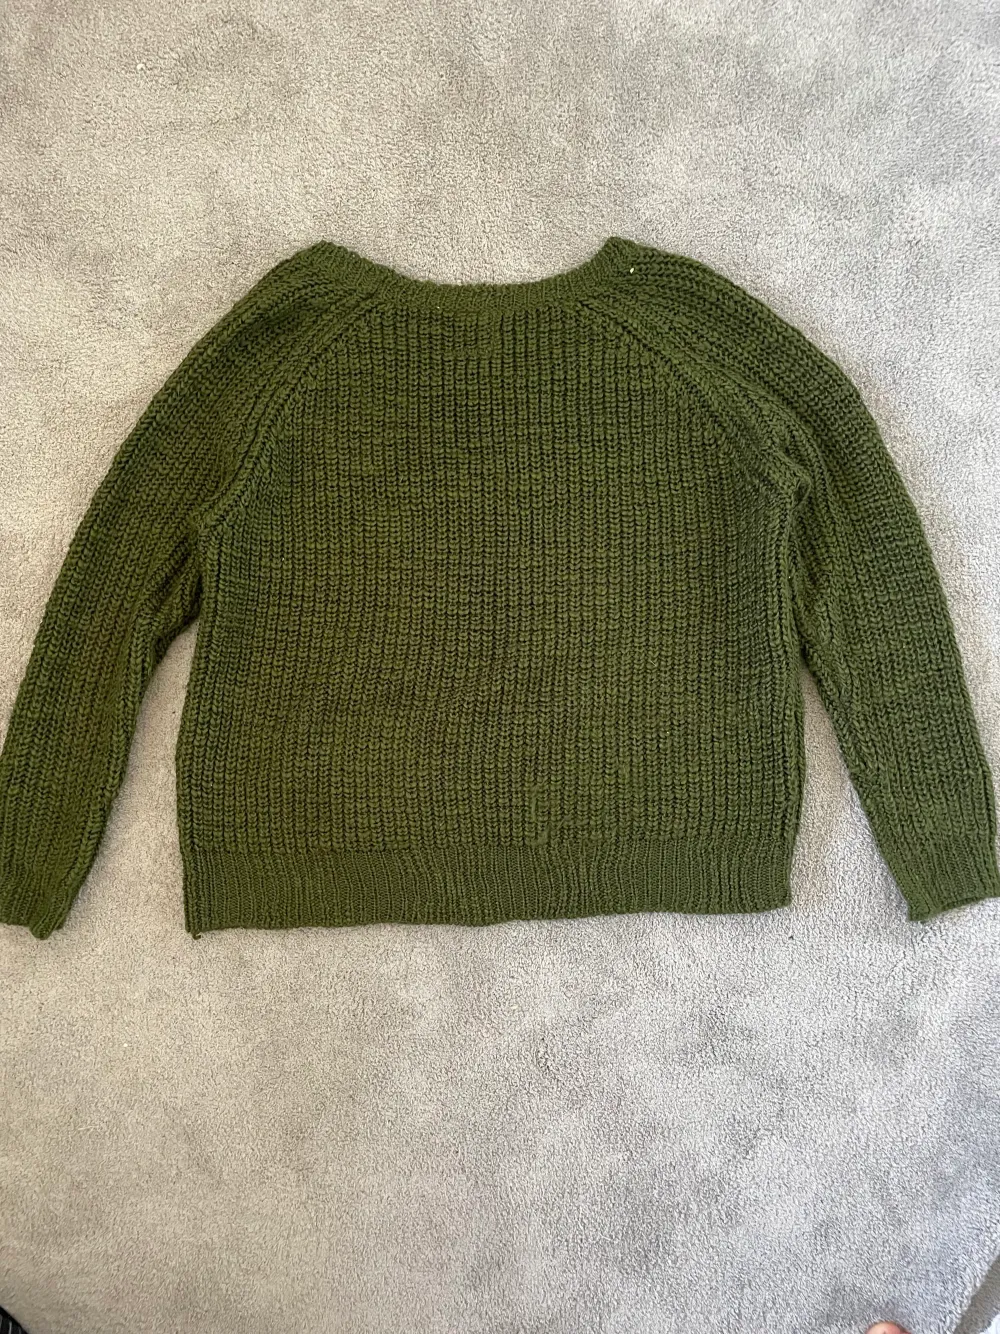 Mörkgrön stickad tröja från kollektionen we ♡ knit, clockhouse skriv gärna pv ifall ni har frågor 🙌. Stickat.